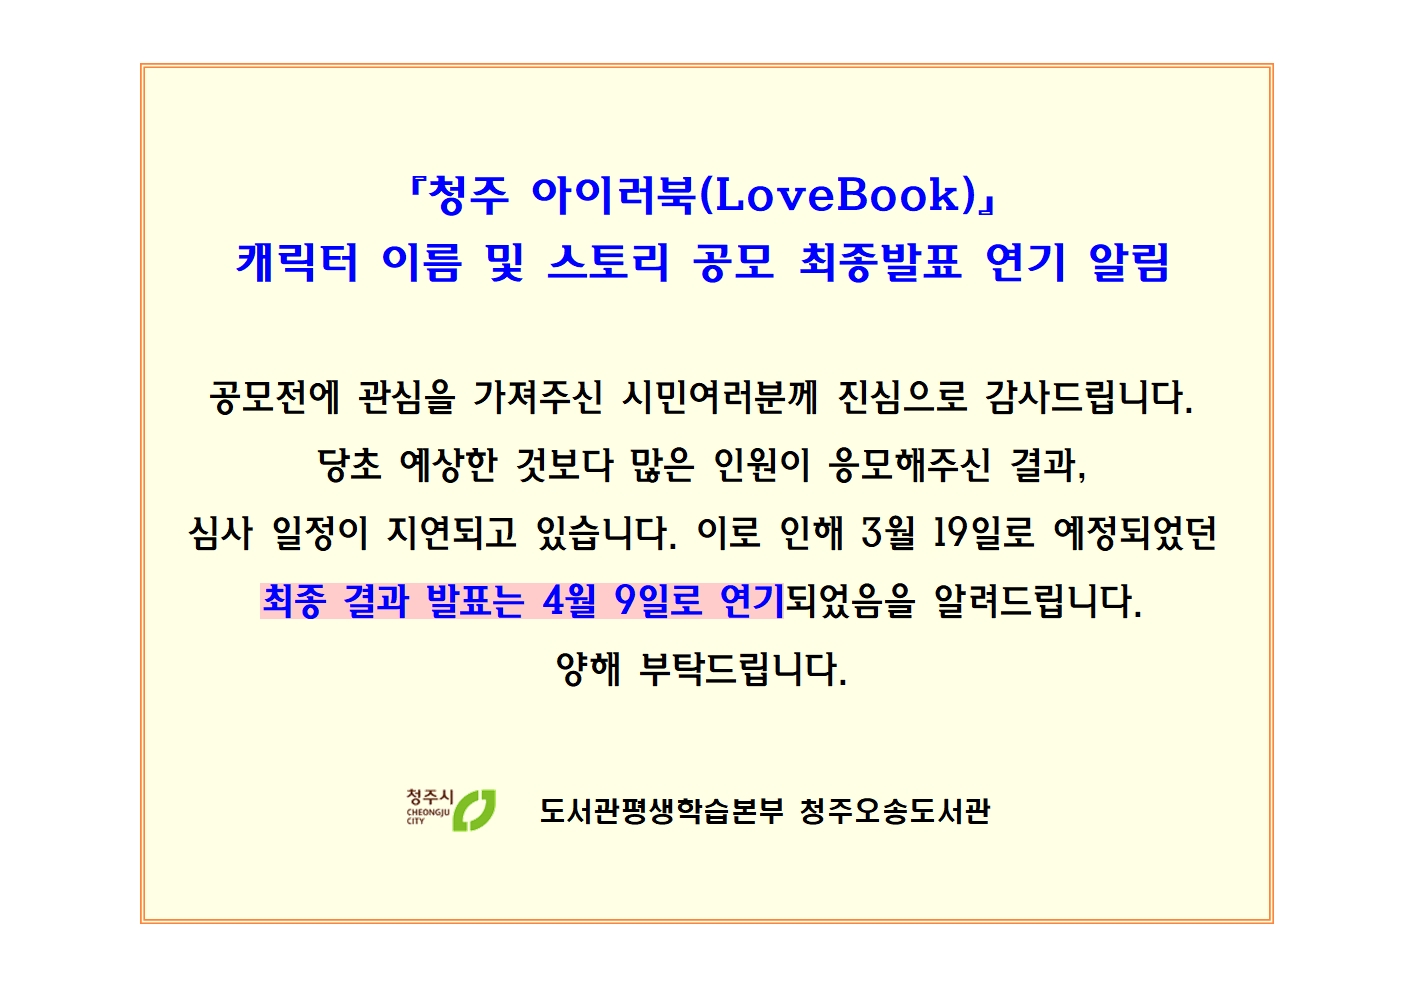 『청주 아이러북(LoveBook)』 캐릭터 이름 및 스토리 공모 최종발표 연기 알림